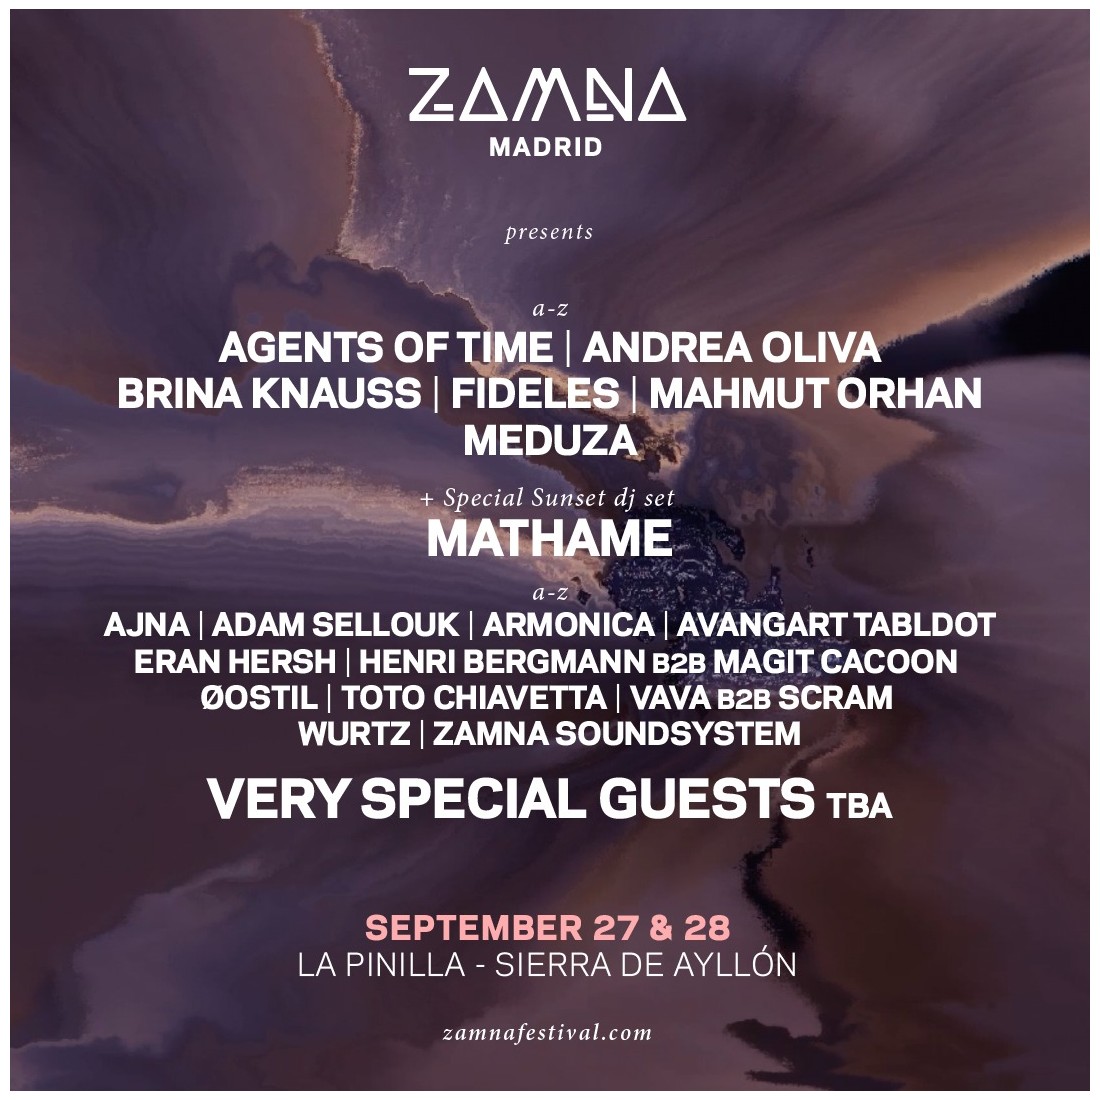 Zamna Madrid - September 27 & 28 VIP 2 DAY PASS